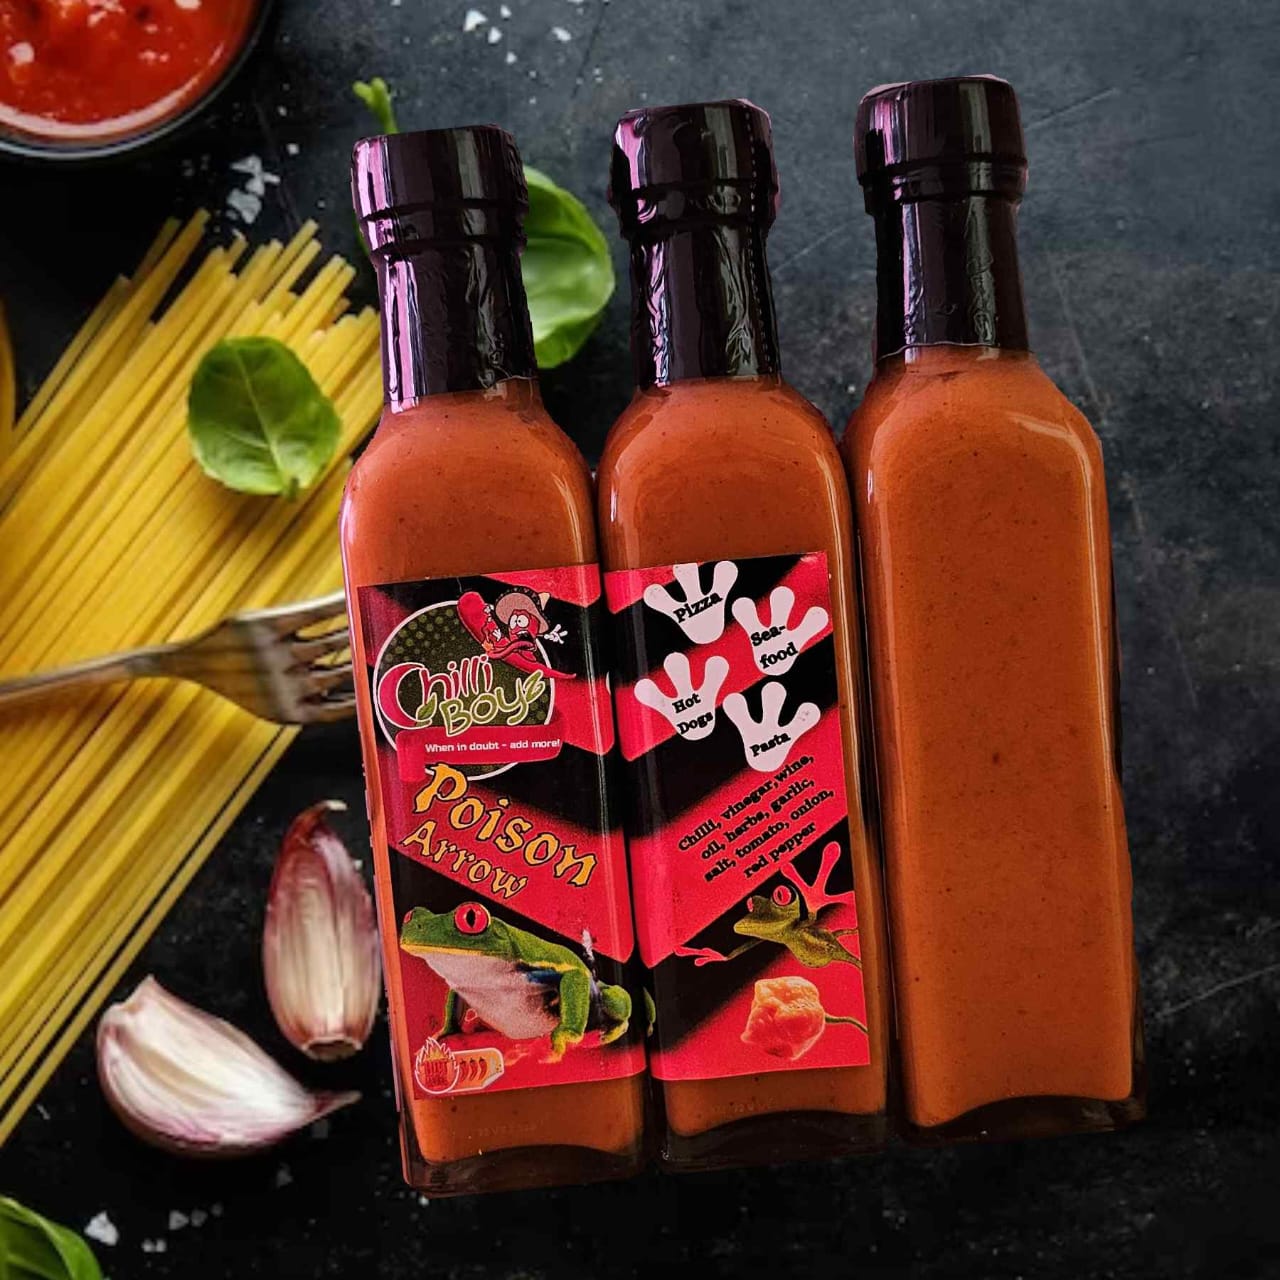 Poison Arrow Sauce - Won "Best Tasting Sauce" at Chilli Festival in Hartebeespoort